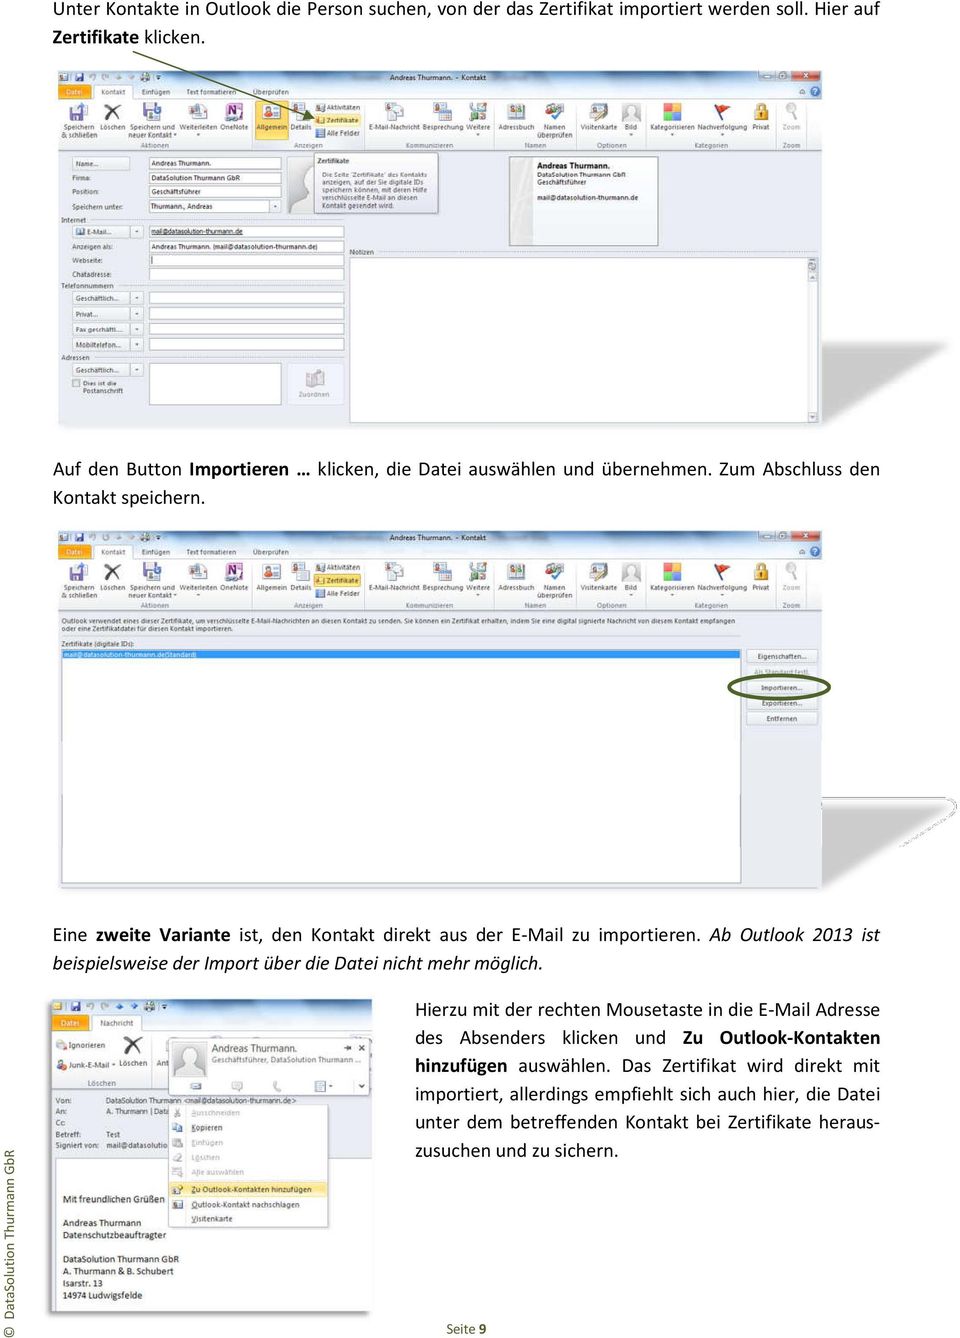 Eine zweite Variante ist, den Kontakt direkt aus der E-Mail zu importieren. Ab Outlook 2013 ist beispielsweise der Import über die Datei nicht mehr möglich.